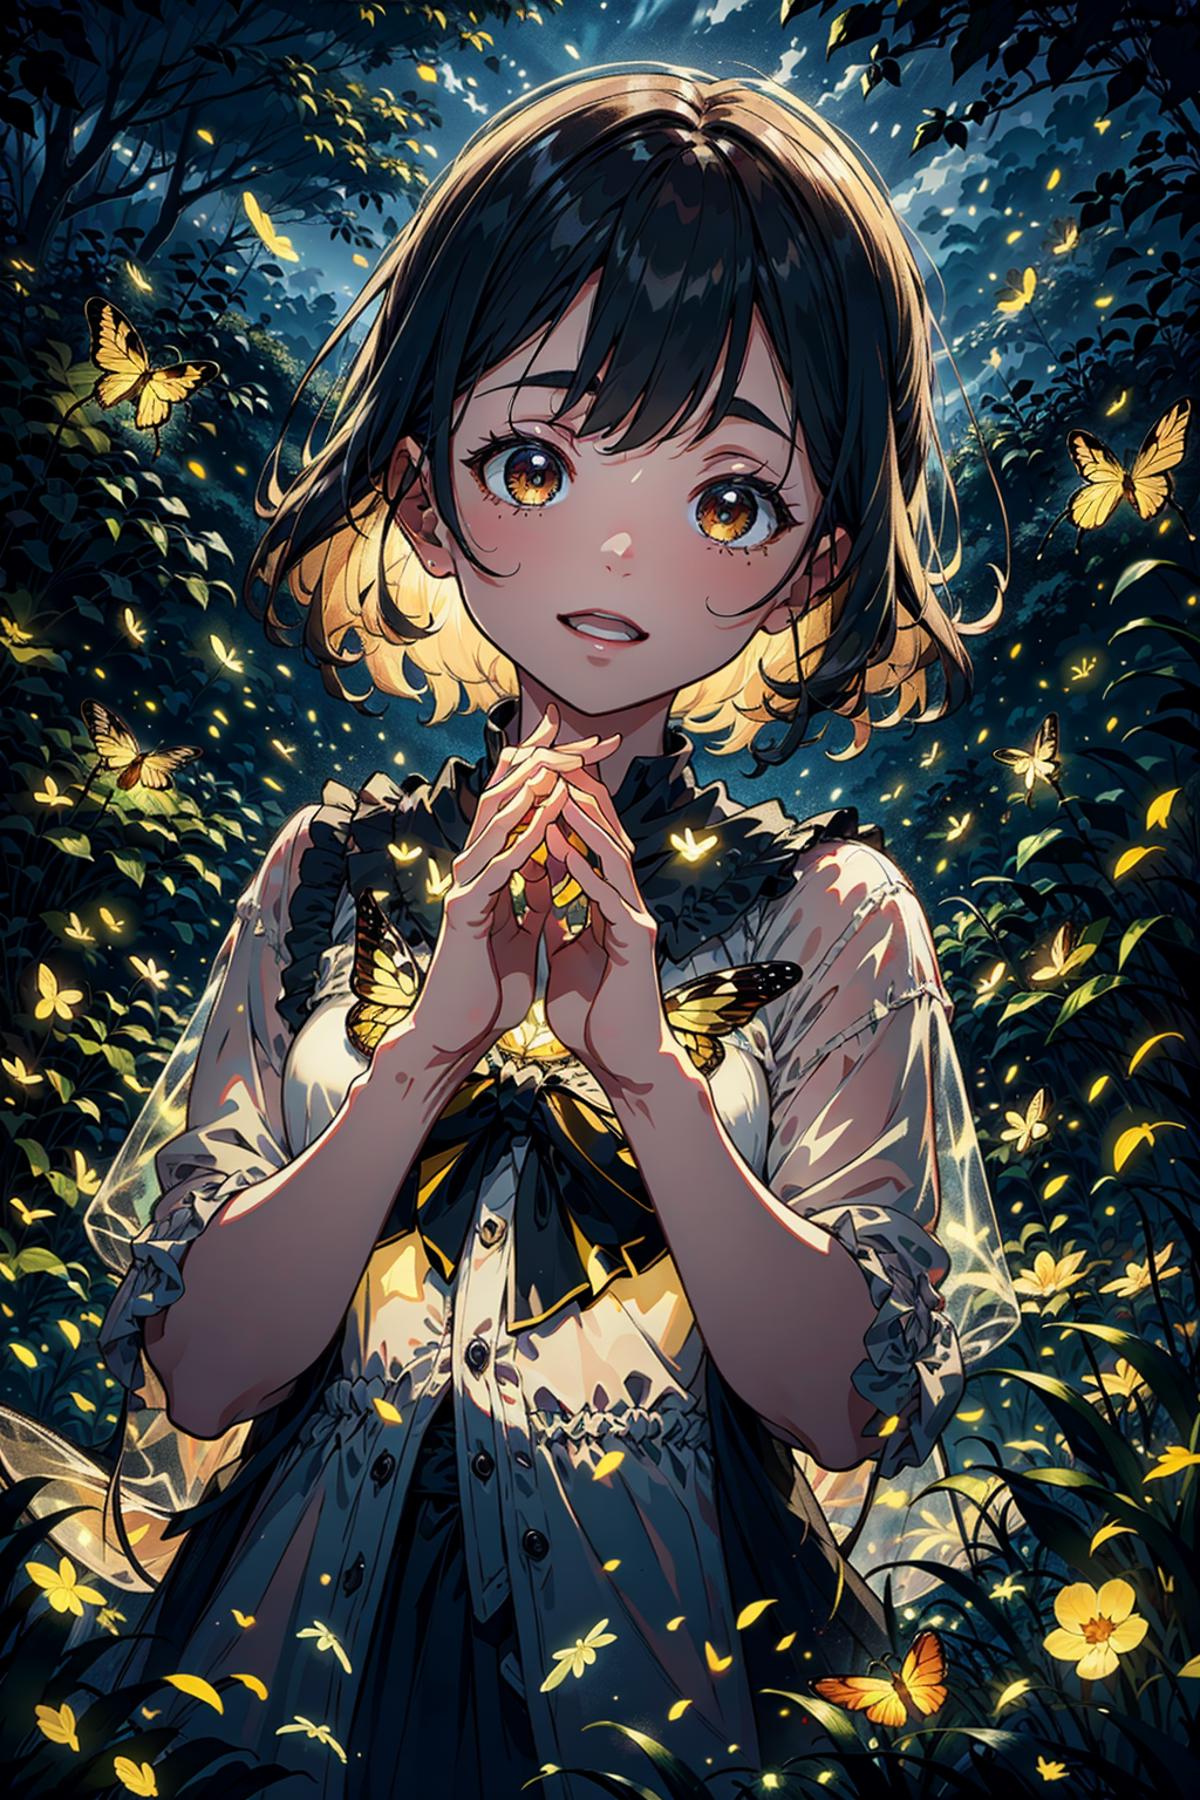 Fireflies ホタル image by Junbegun